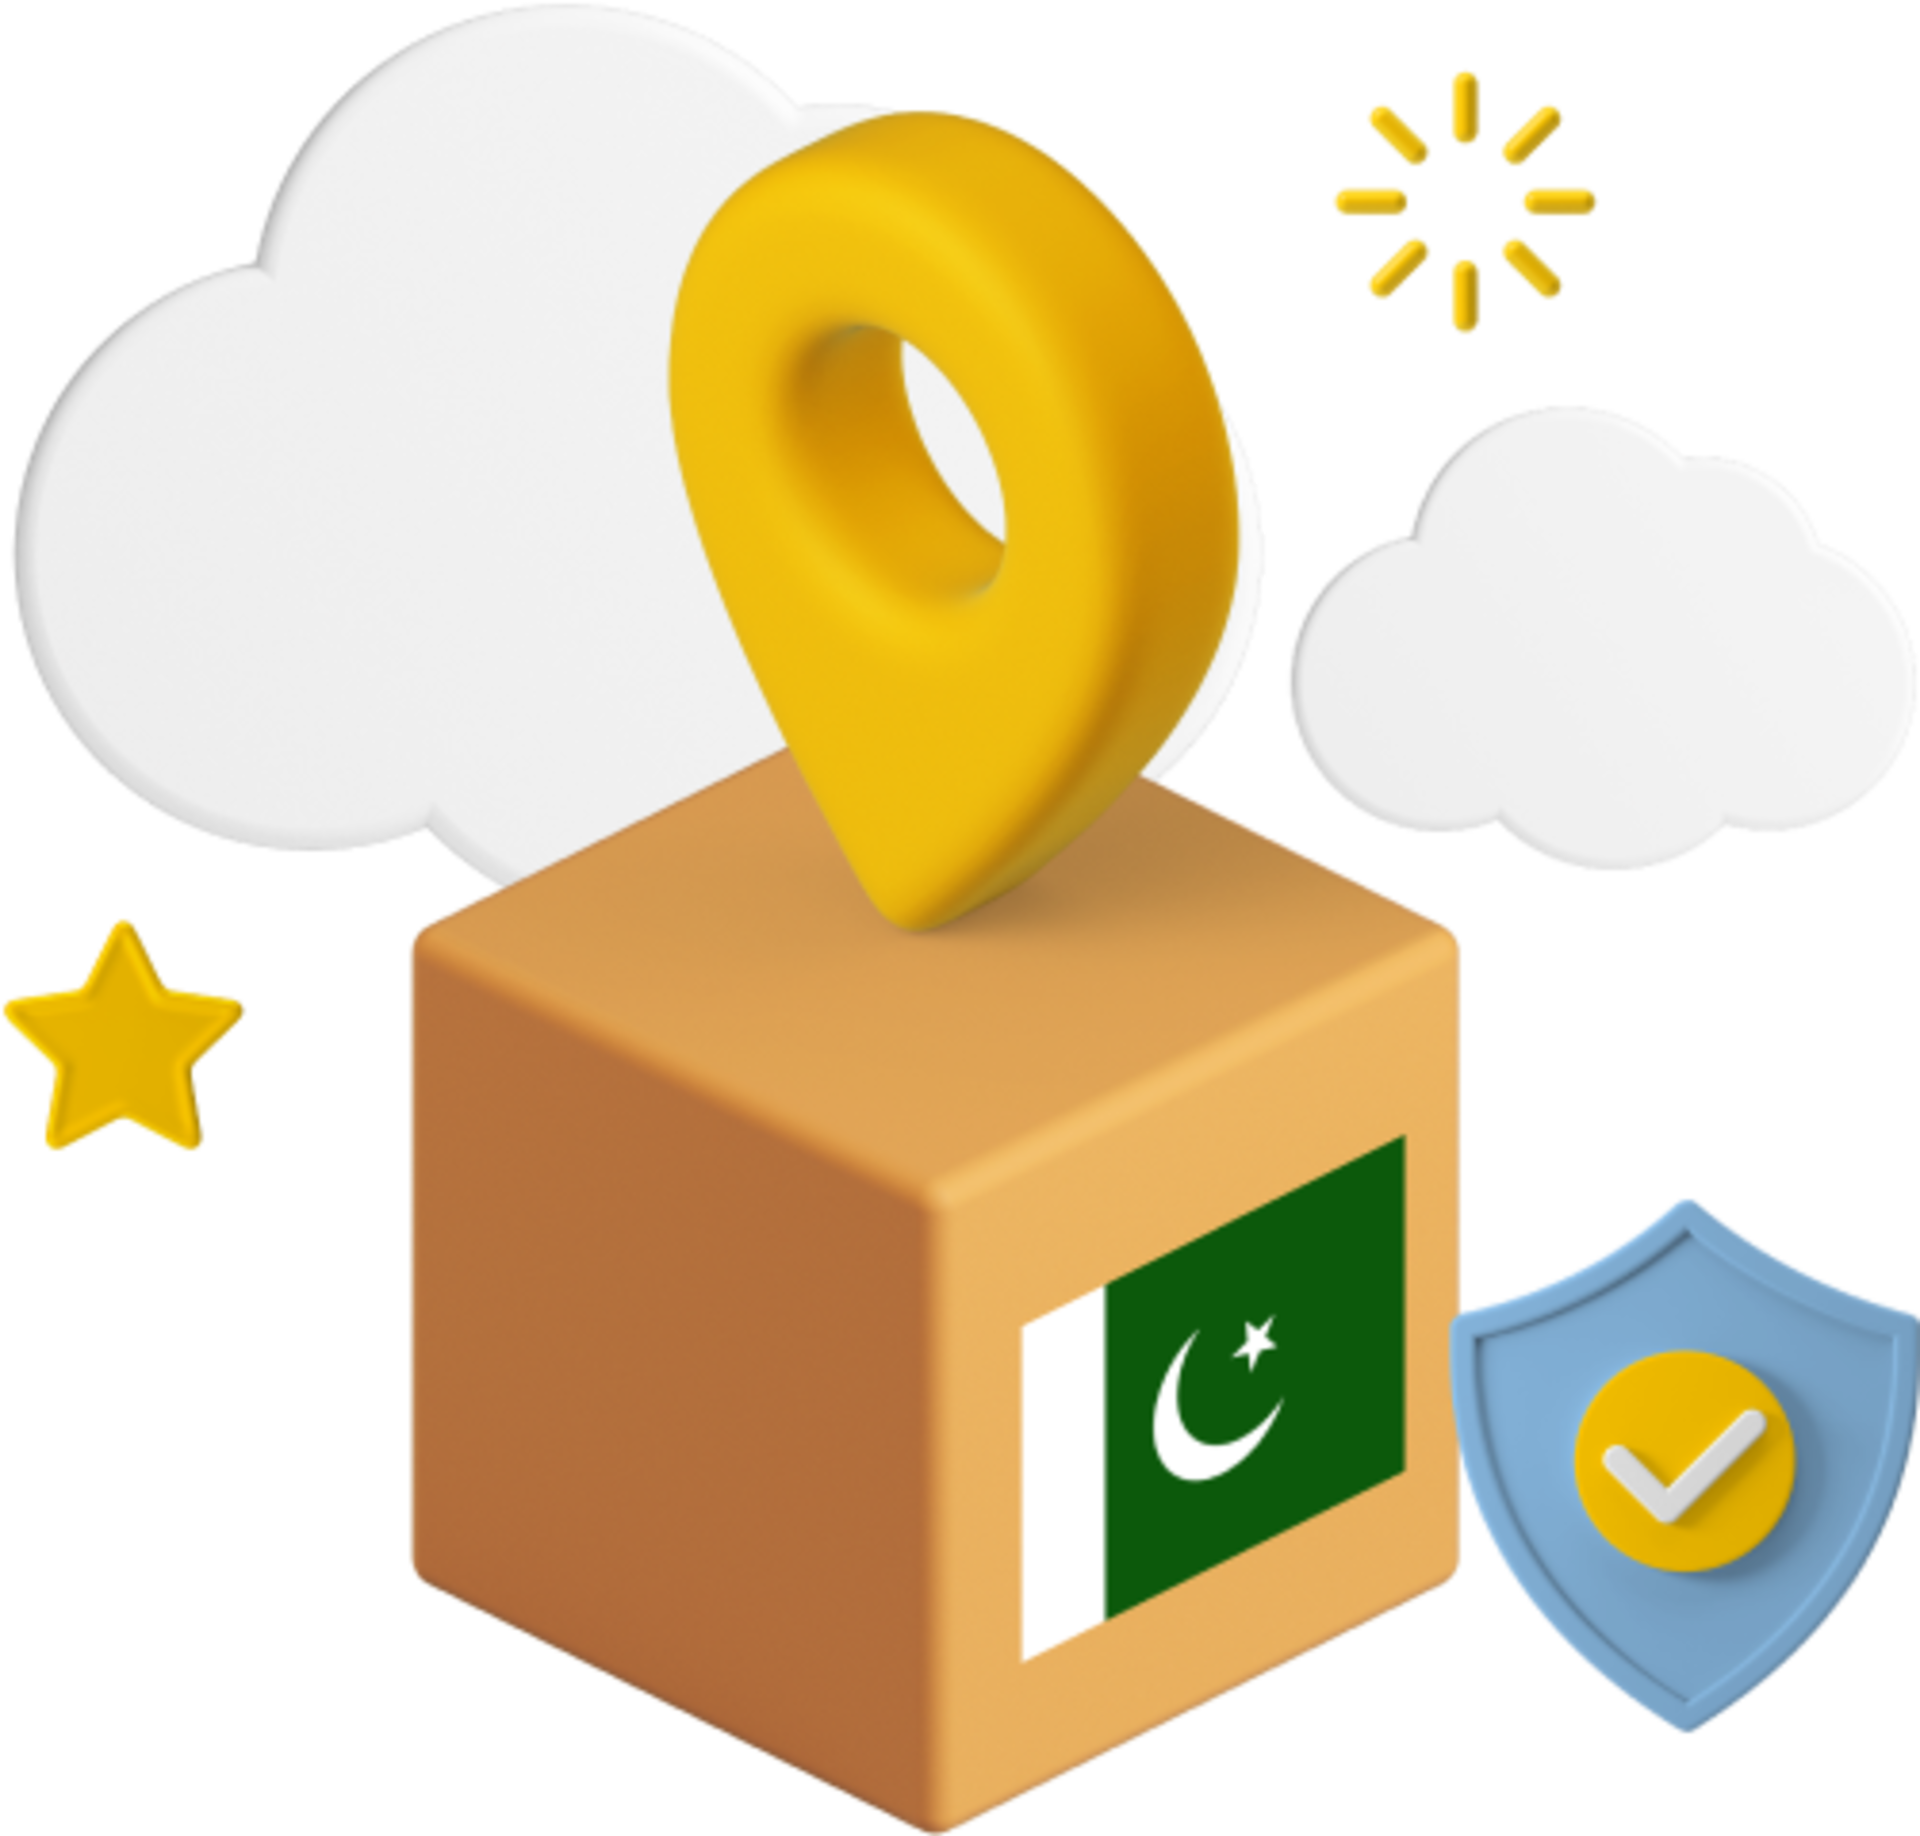 Pakistani flag on box